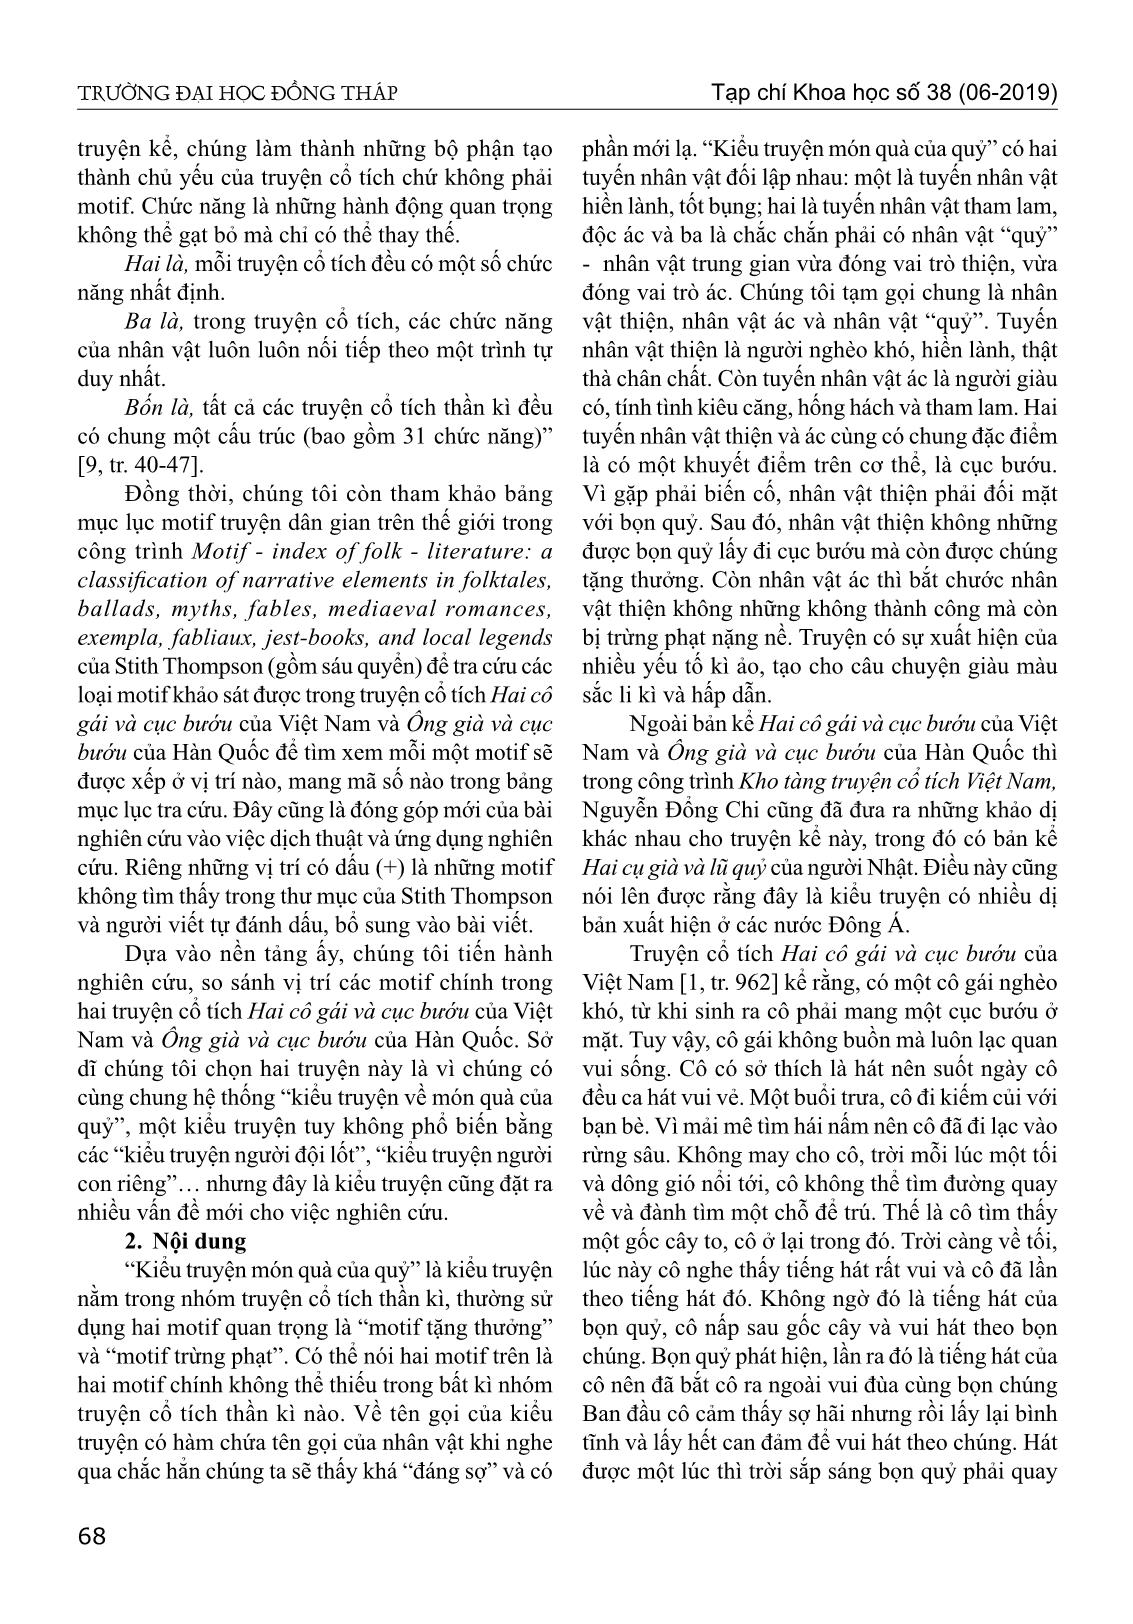 Motif trong truyện cổ tích hai cô gái và cục bướu của Việt Nam và ông già và cục bướu của Hàn Quốc từ góc nhìn so sánh trang 2